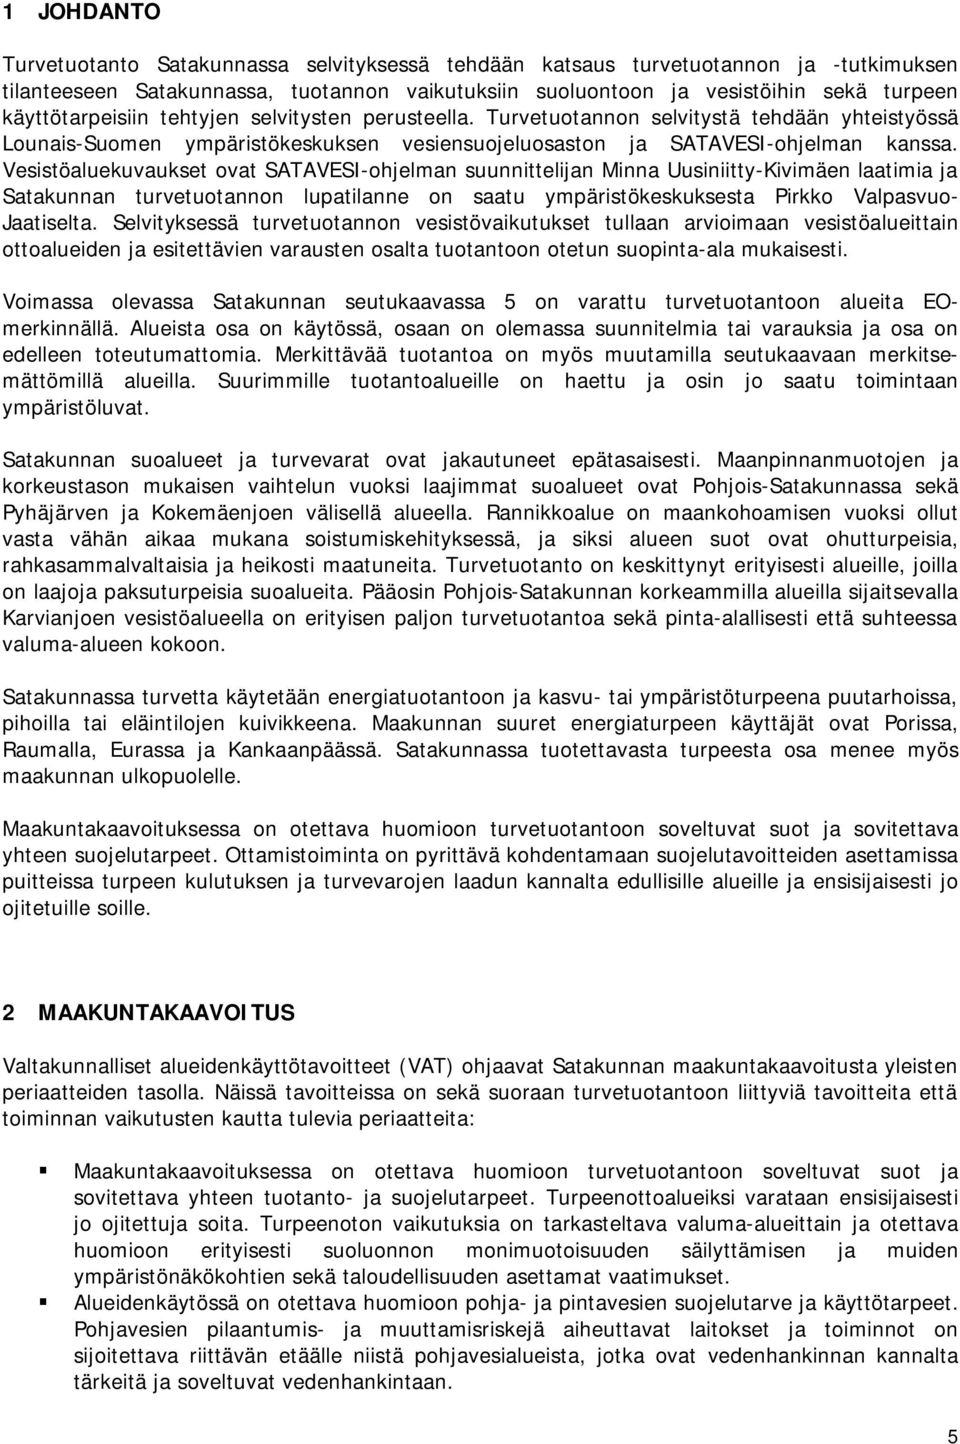 Vesistöaluekuvaukset ovat SATAVESI-ohjelman suunnittelijan Minna Uusiniitty-Kivimäen laatimia ja Satakunnan turvetuotannon lupatilanne on saatu ympäristökeskuksesta Pirkko Valpasvuo- Jaatiselta.